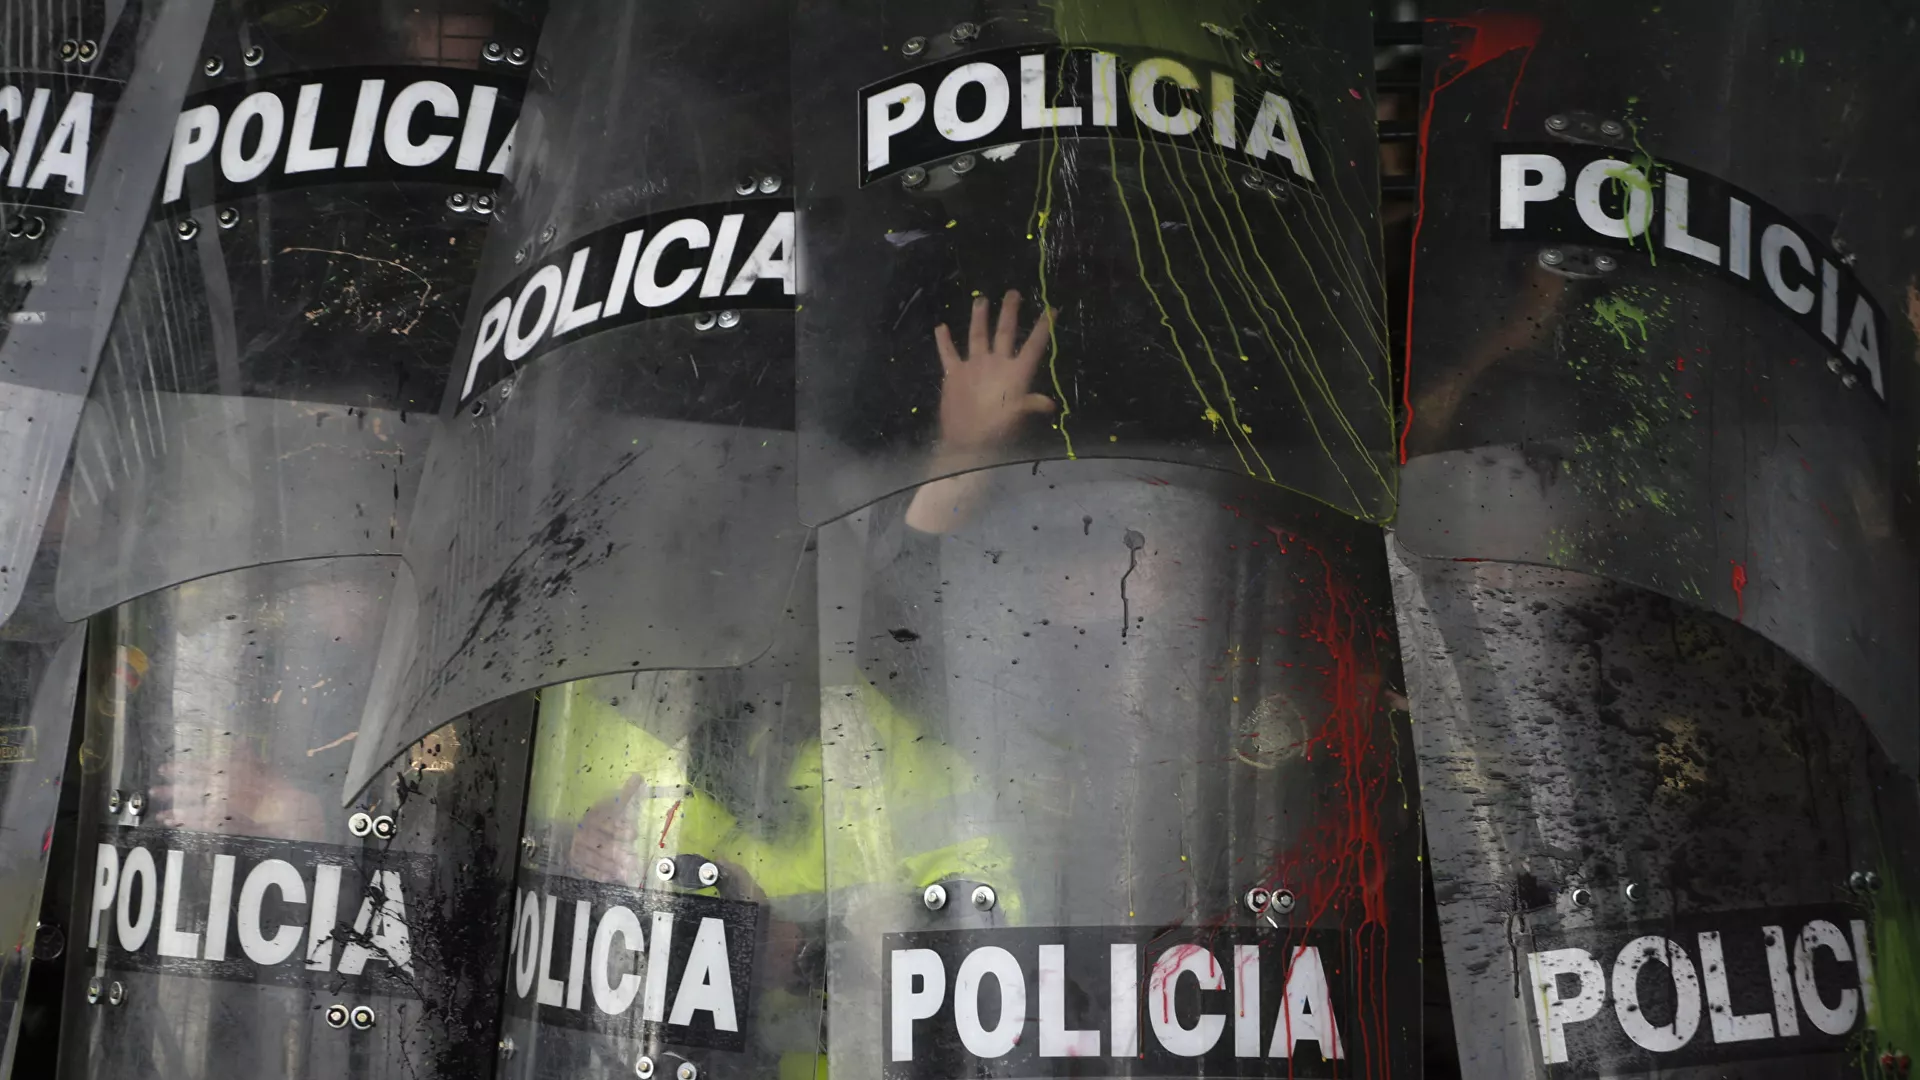  Policía de Colombia afirma que «no ha masacrado a nadie» tras el informe de la ONU